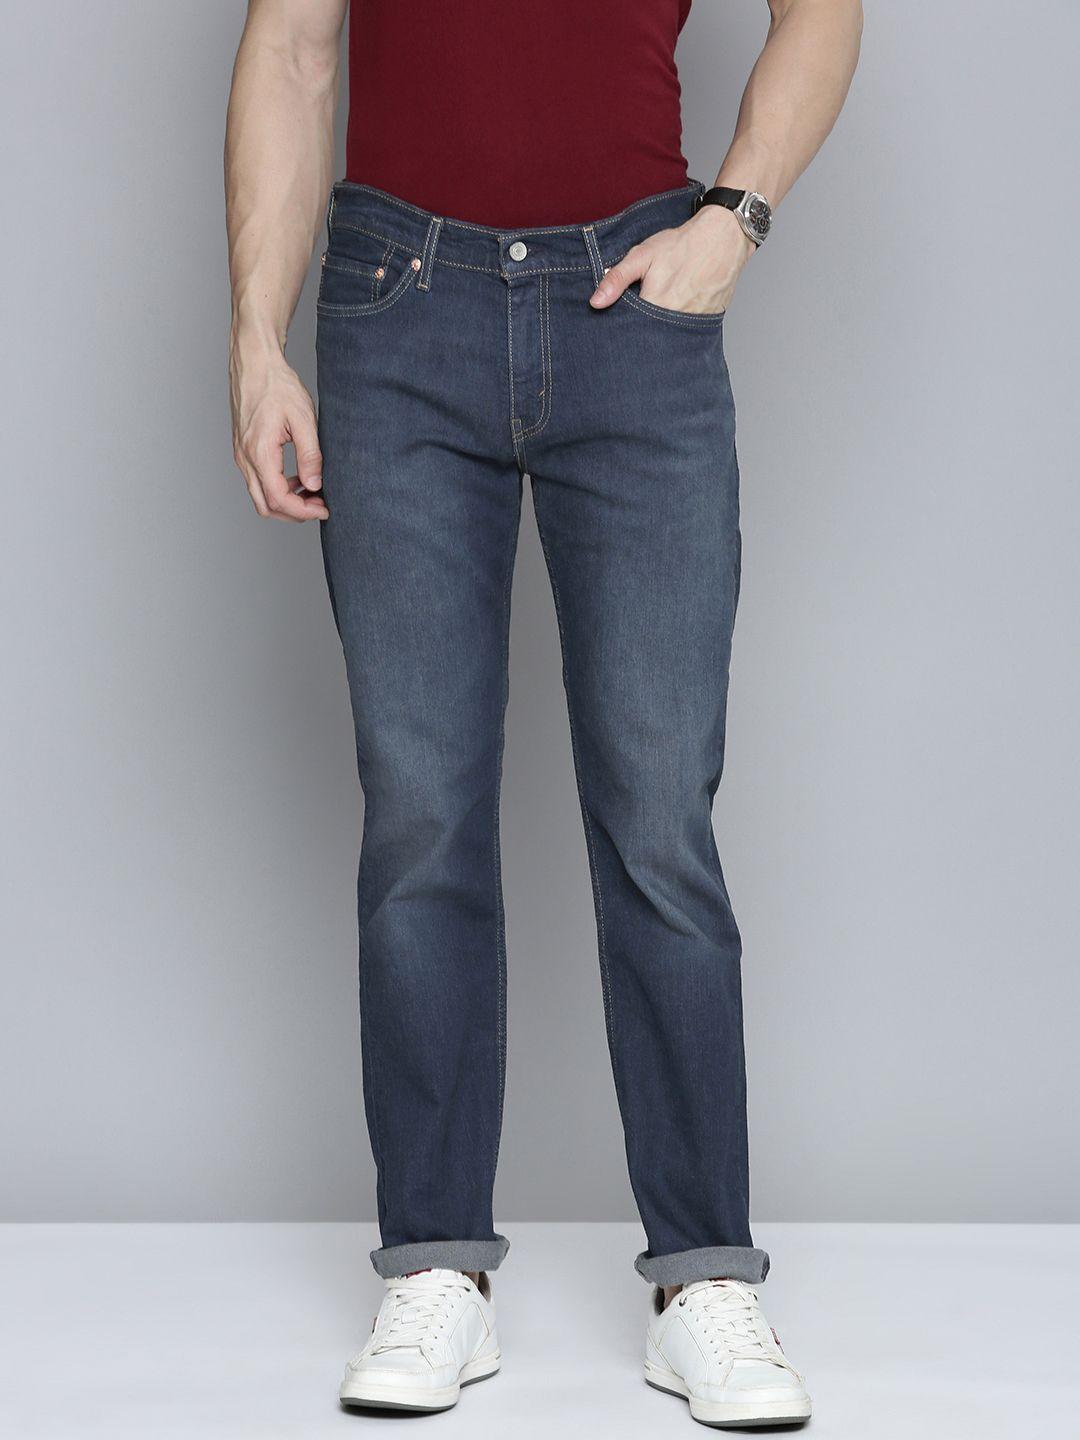 levis-men-511-slim-fit-light-fade-stretchable-jeans